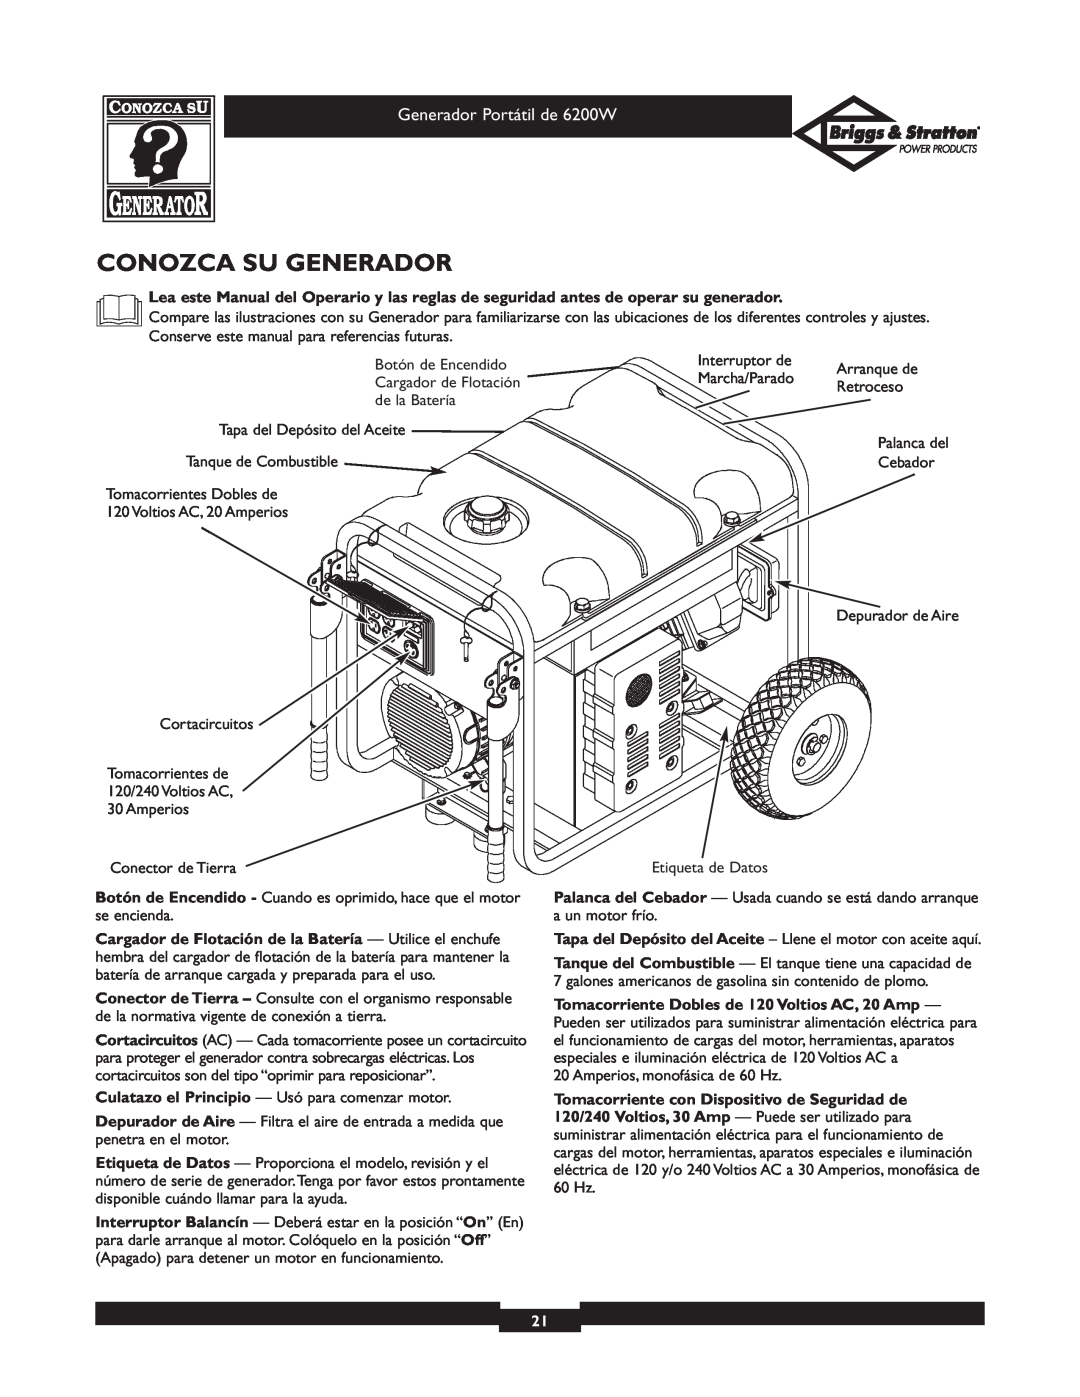 Briggs & Stratton 30211 operating instructions Conozca Su Generador, Generador Portátil de 6200W 